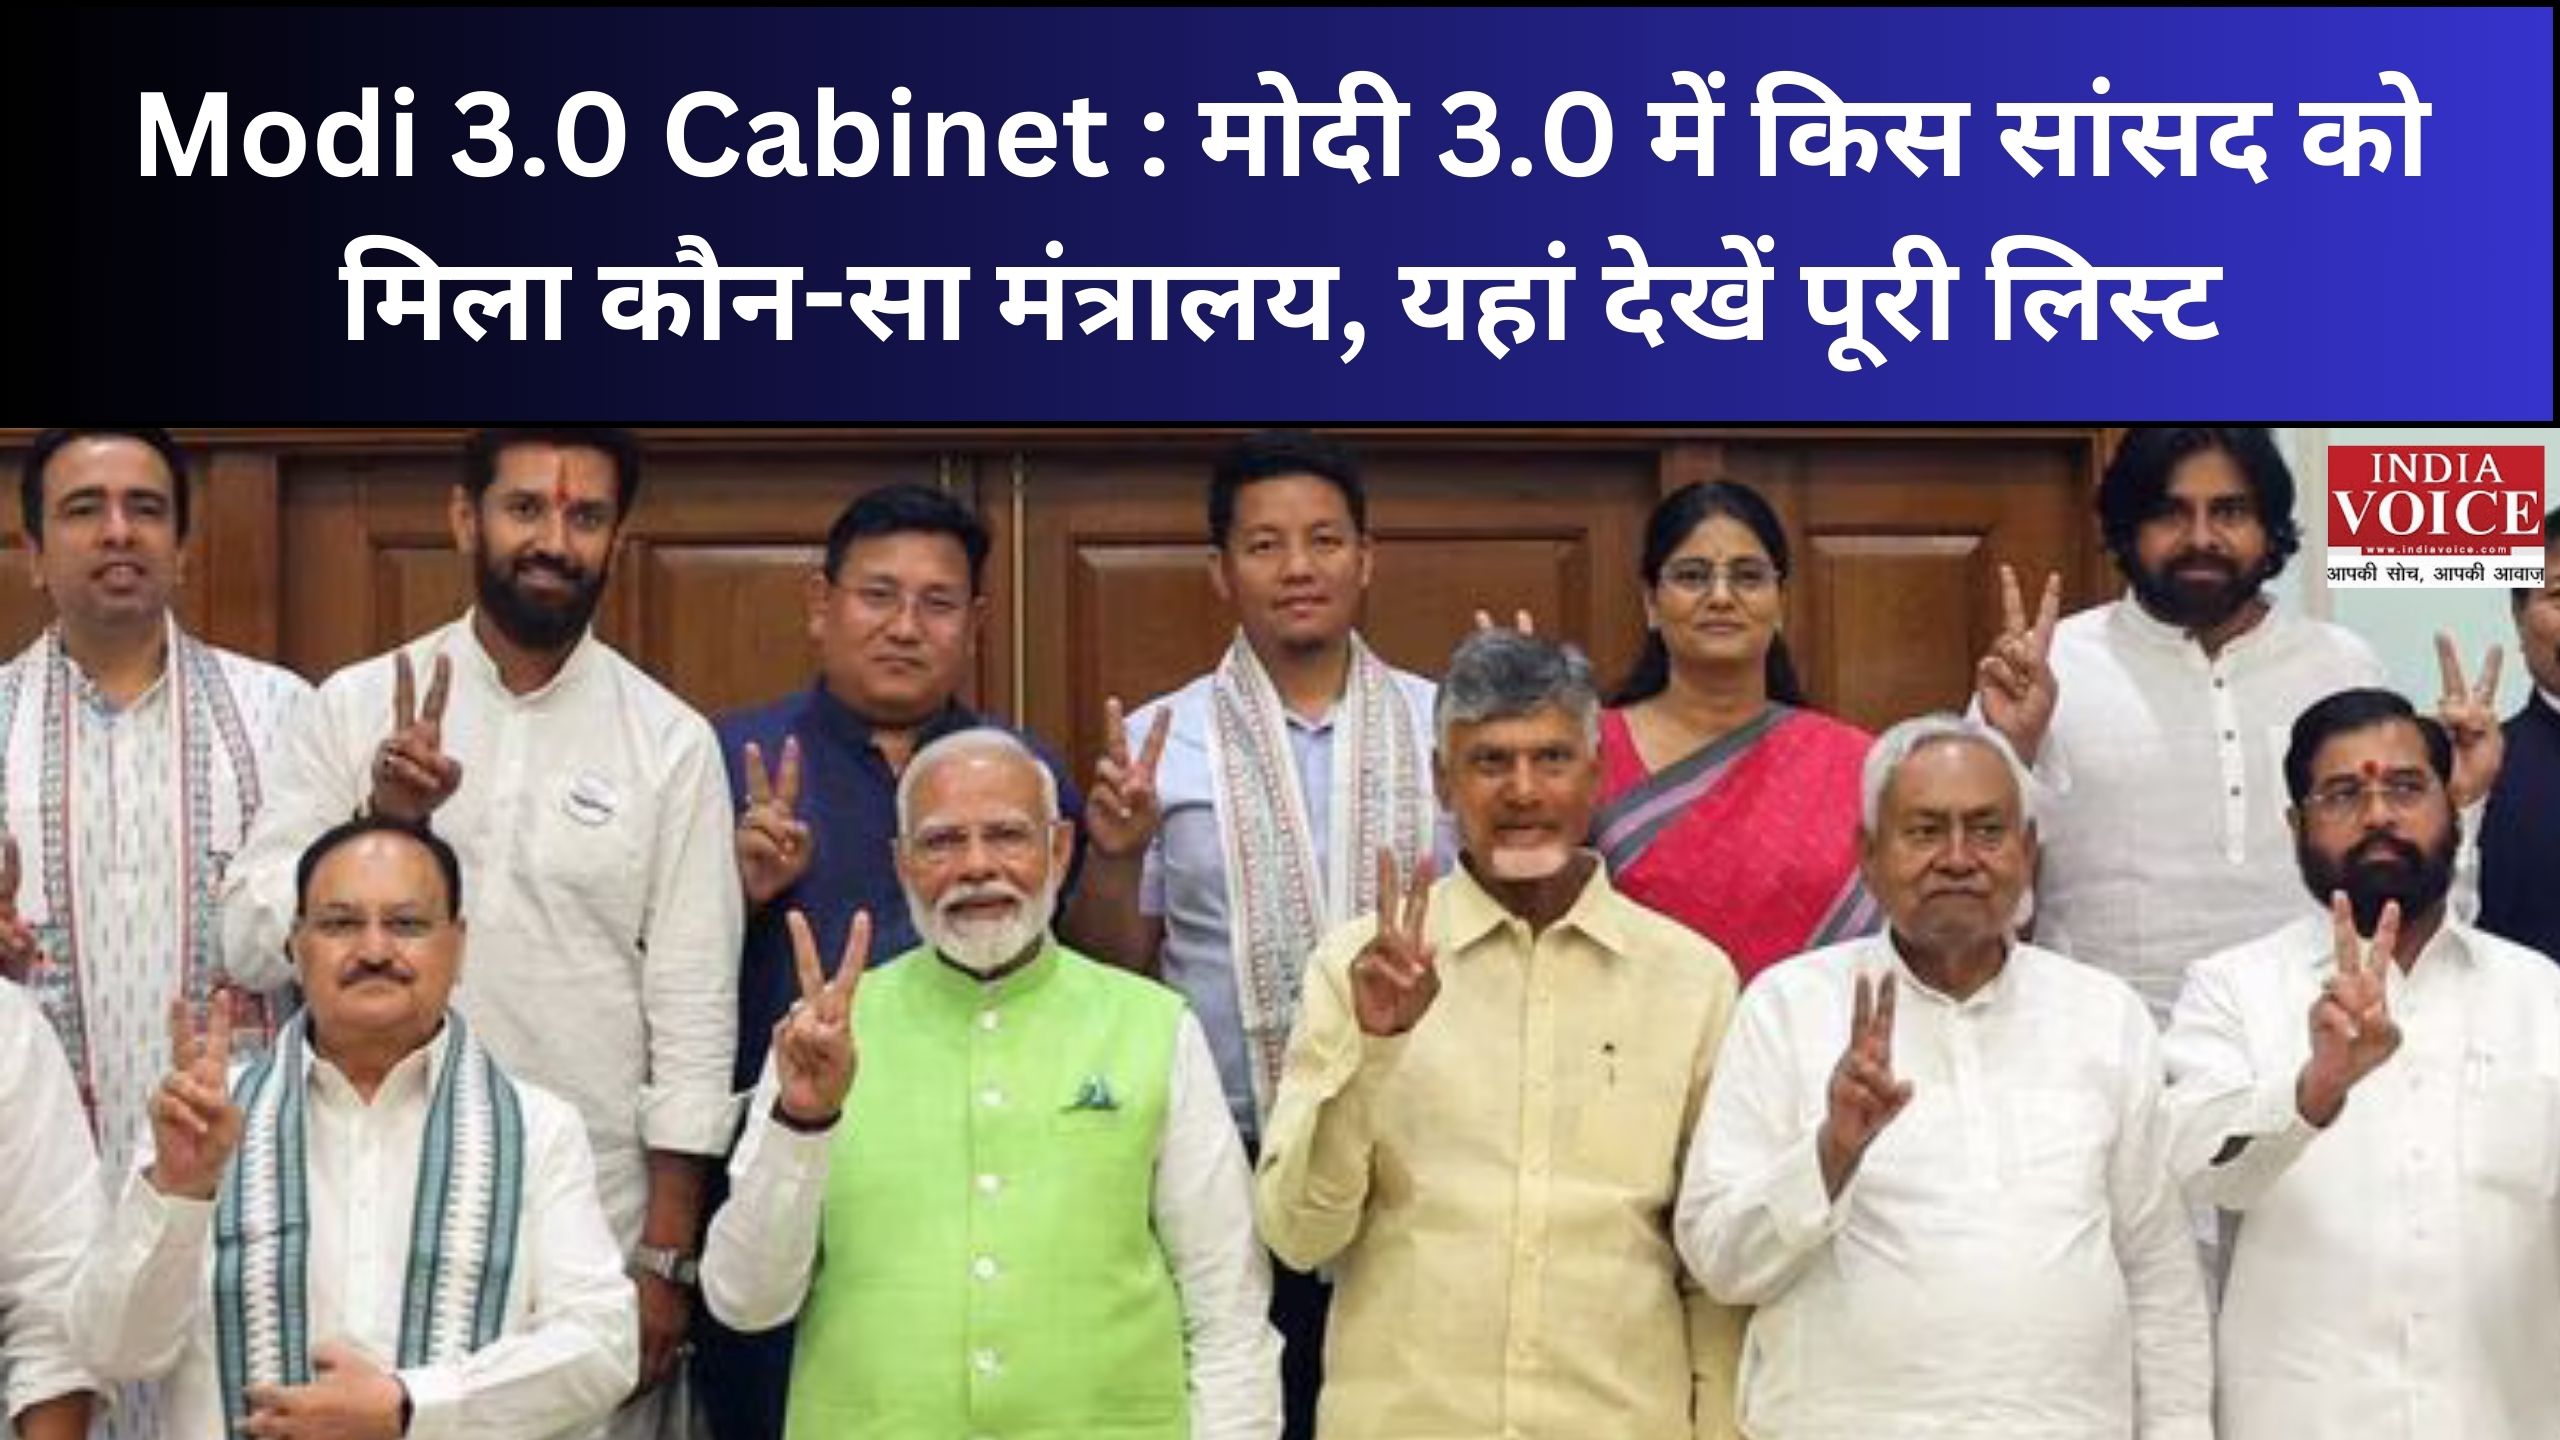 Modi 3.0 Cabinet : मोदी 3.0 में किस सांसद को मिला कौन-सा मंत्रालय, यहां देखें पूरी लिस्ट